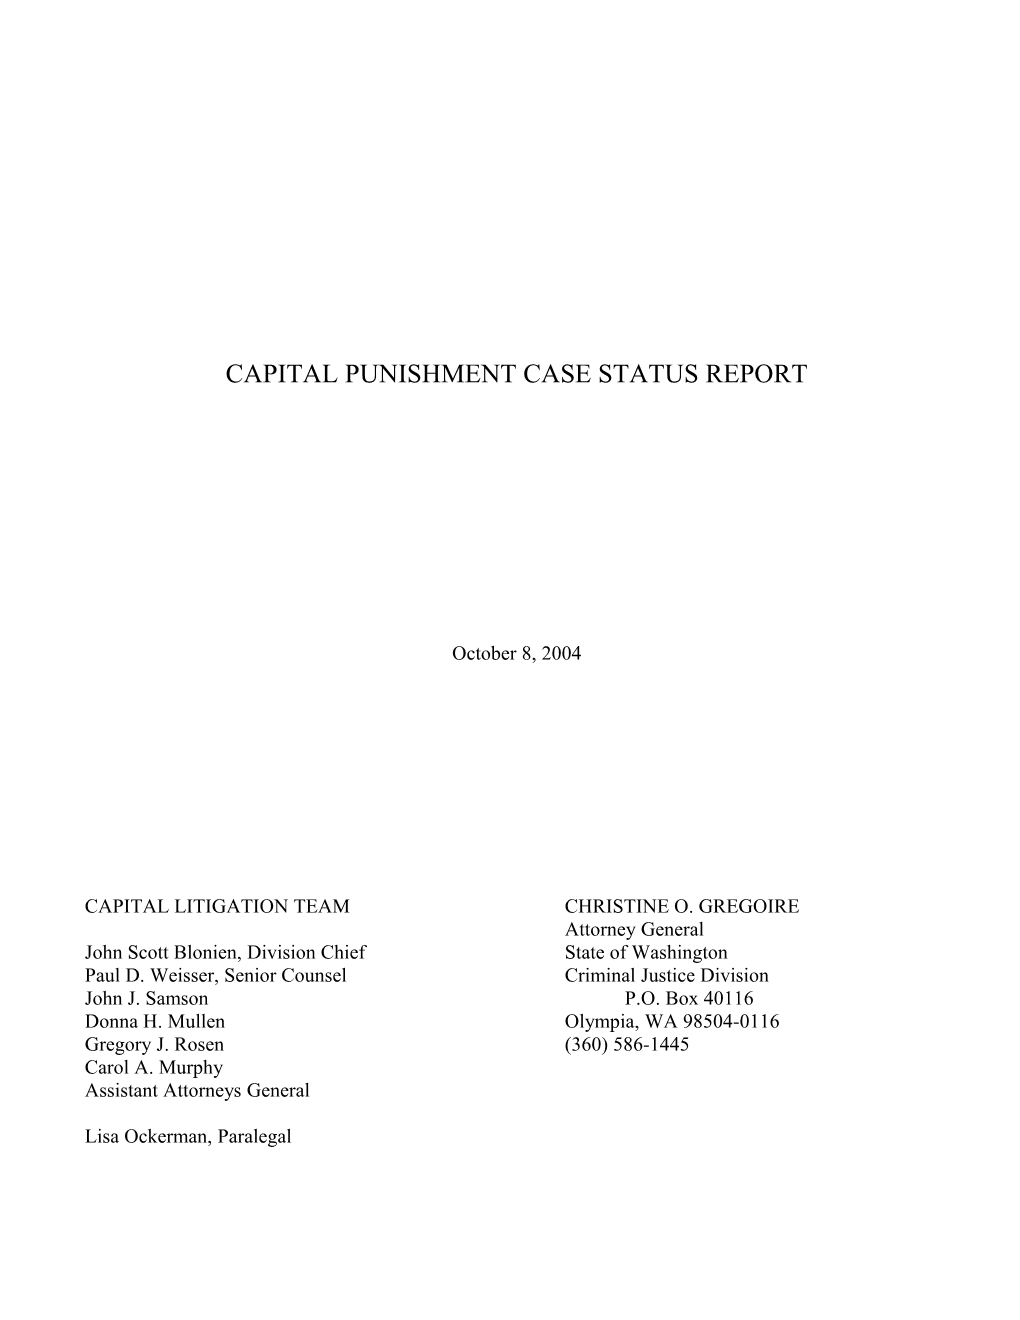 Capital Punishment Case Status Report s2